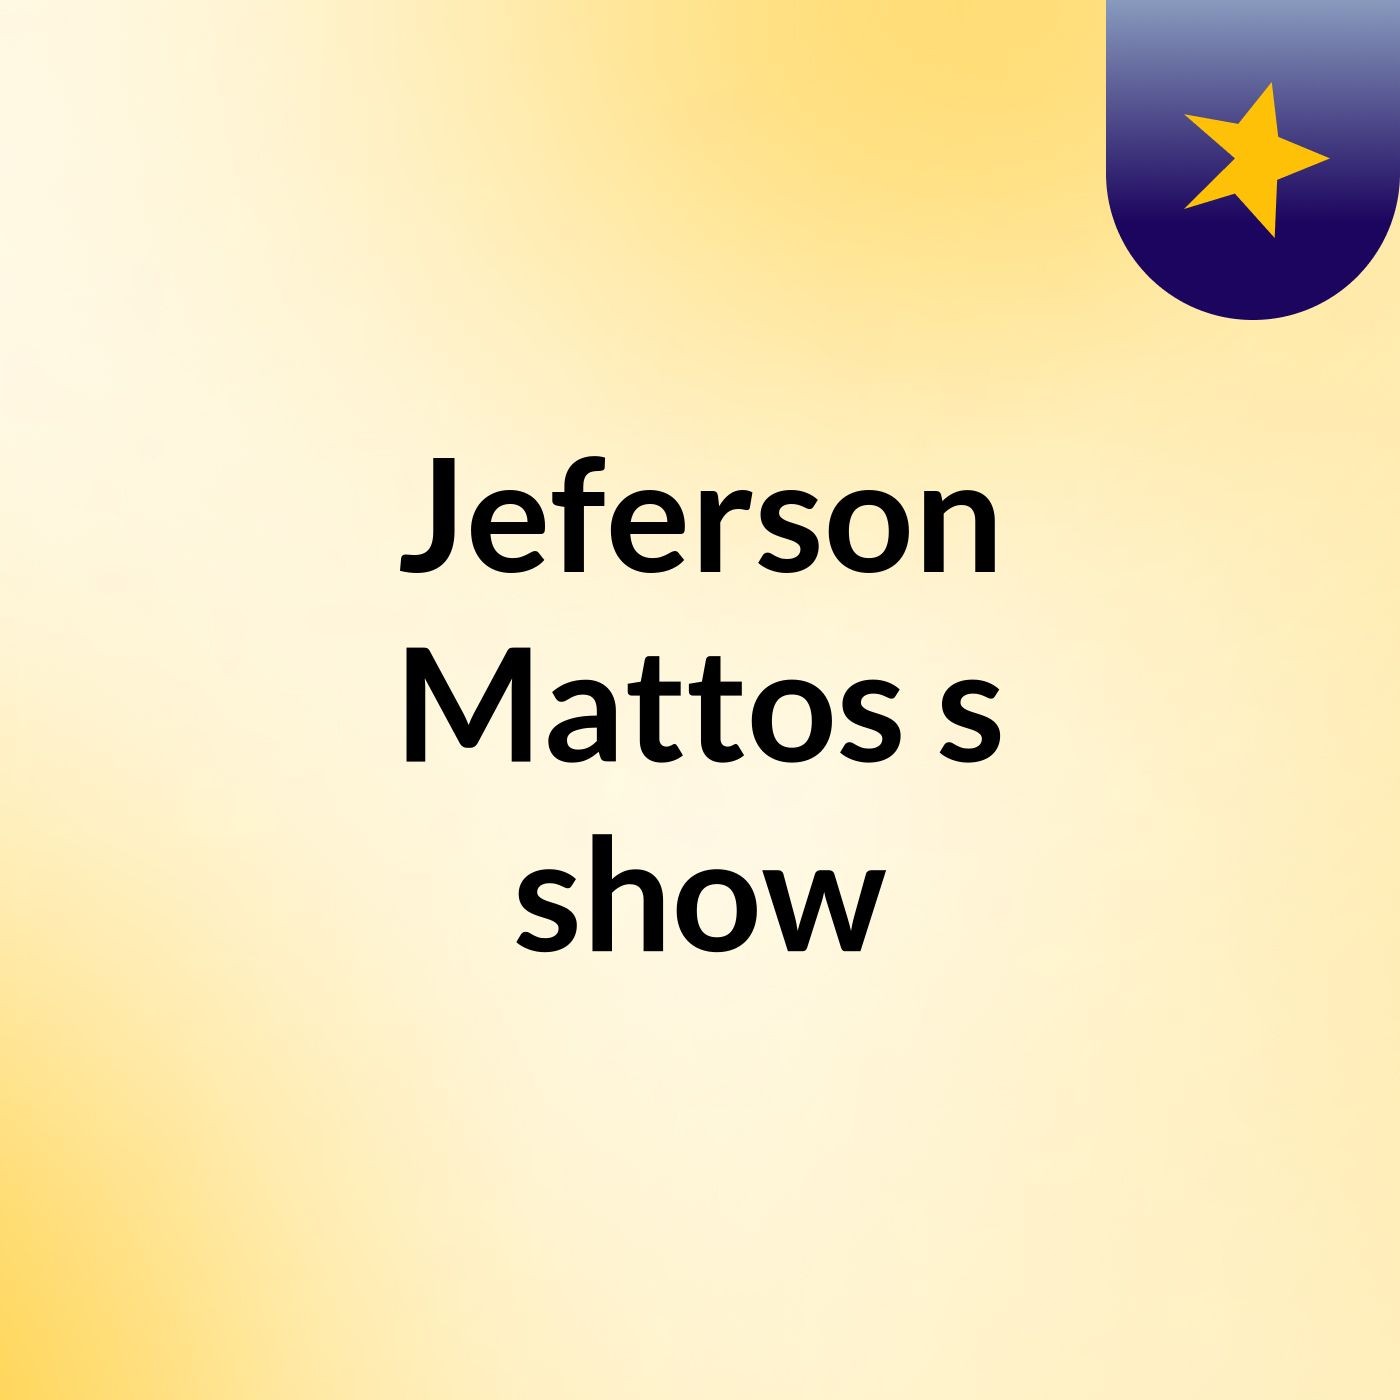 Jeferson Mattos's show